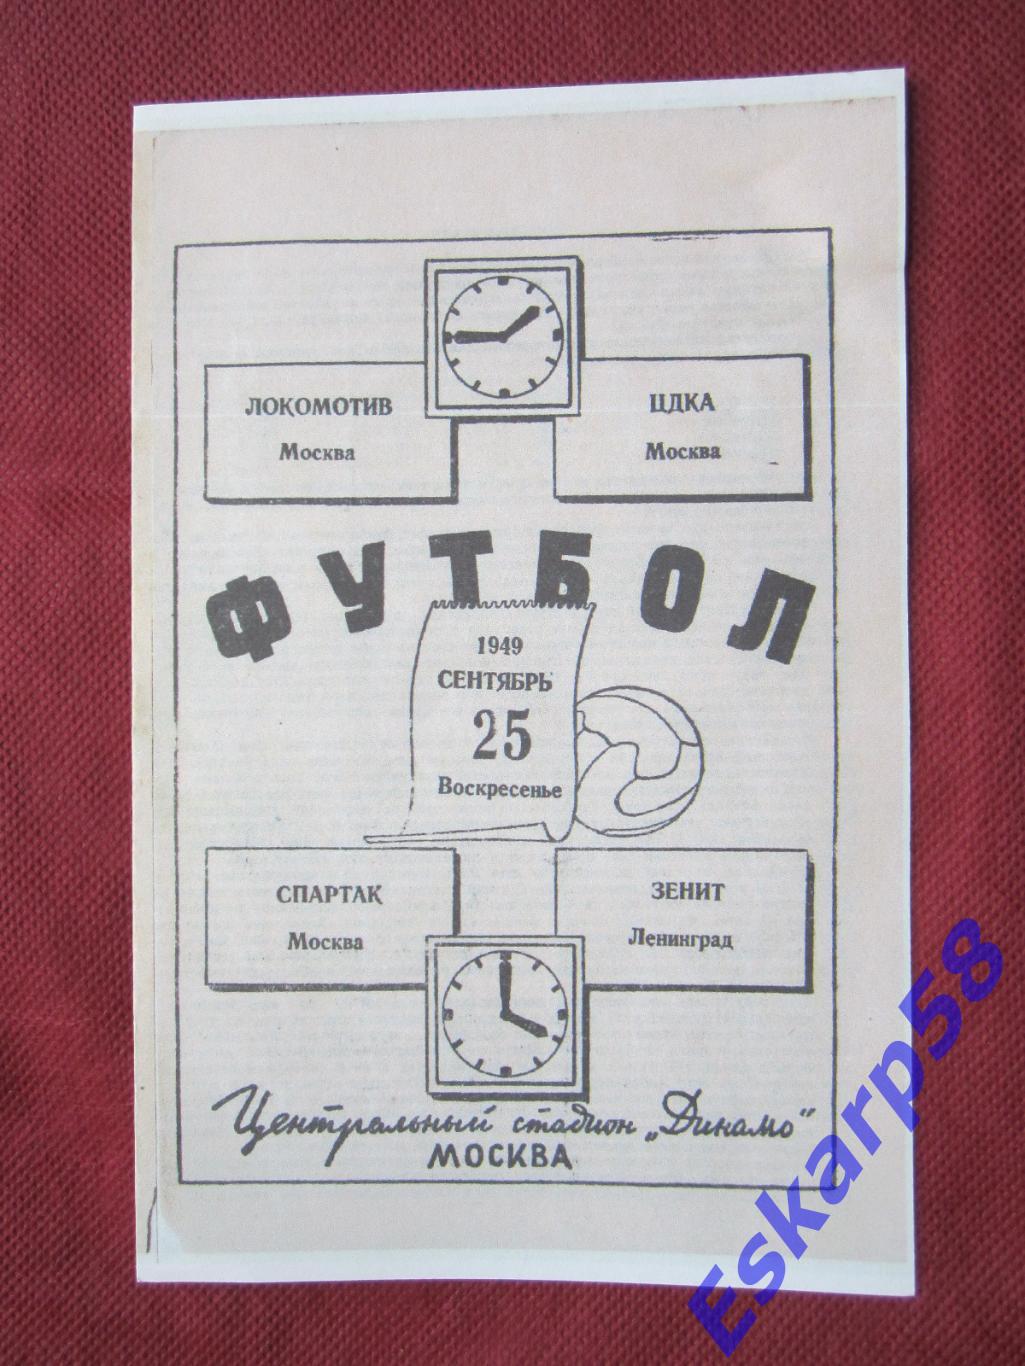 1949.ЦДКА-Локомотив +Спартак - Зенит.25.09.Копия